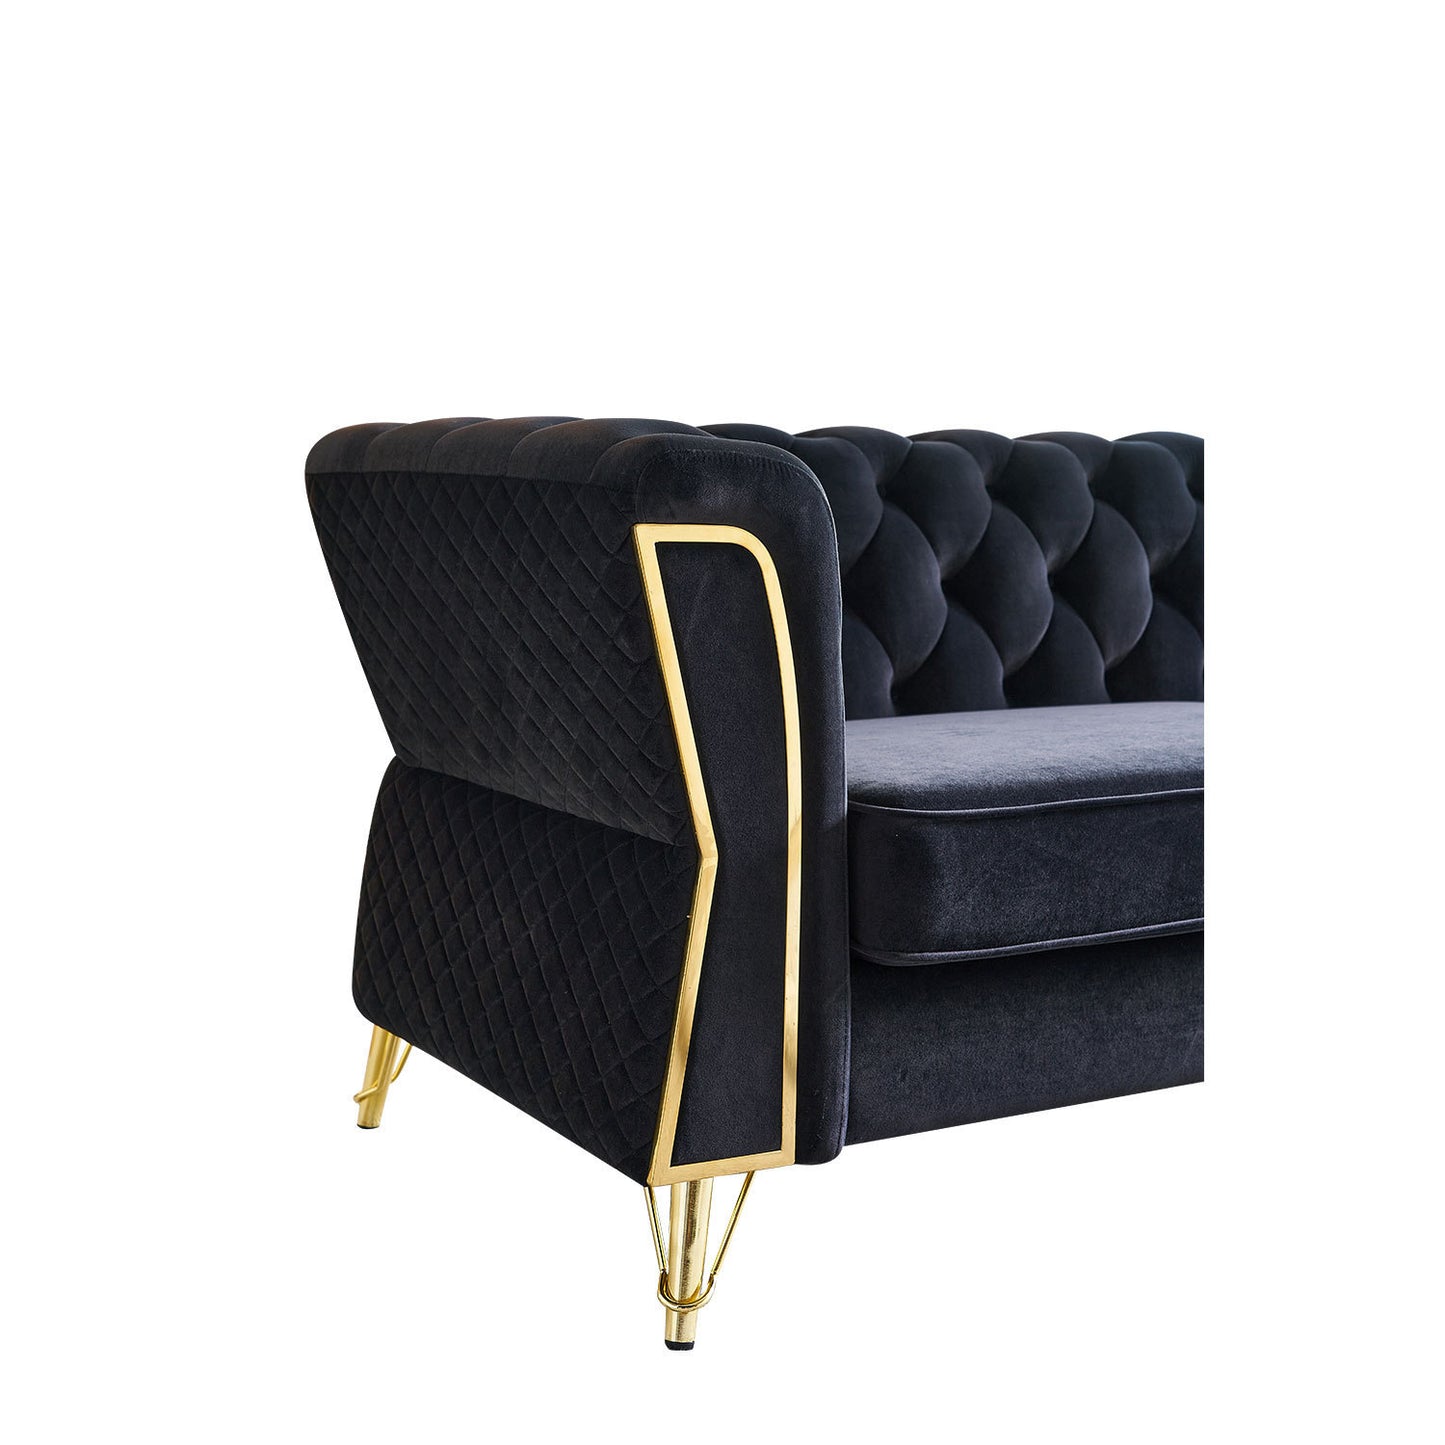 Modern Tufted Velvet Sofa 87.4 inch for Living Room Black Color - Enova Luxe Home Store